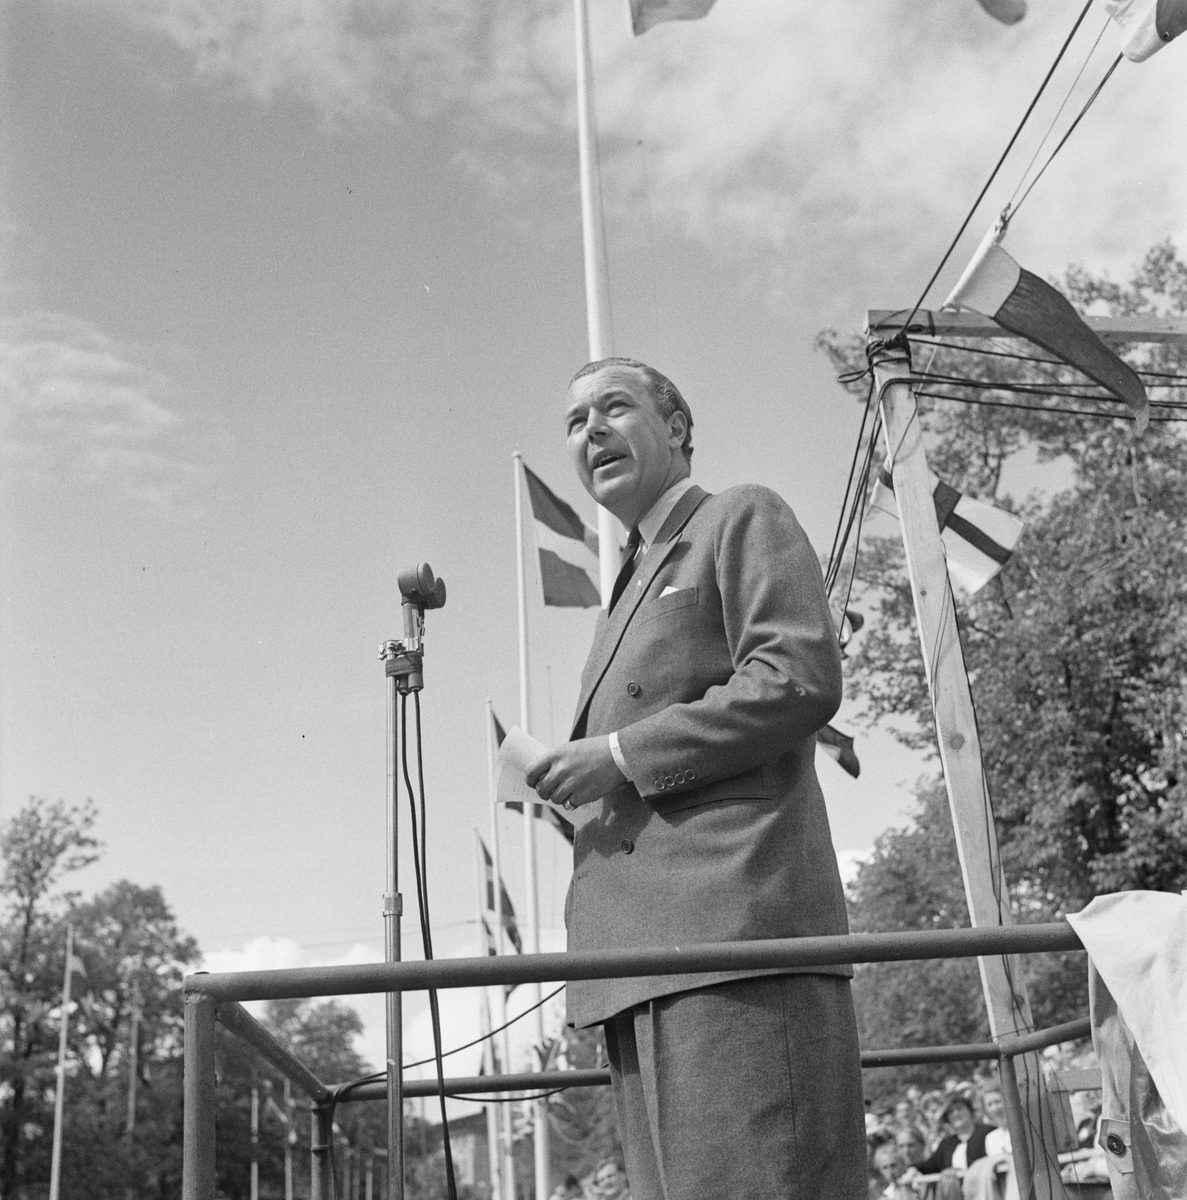 Cykeltävling, SM-vecka, talare, Uppsala, juli 1947